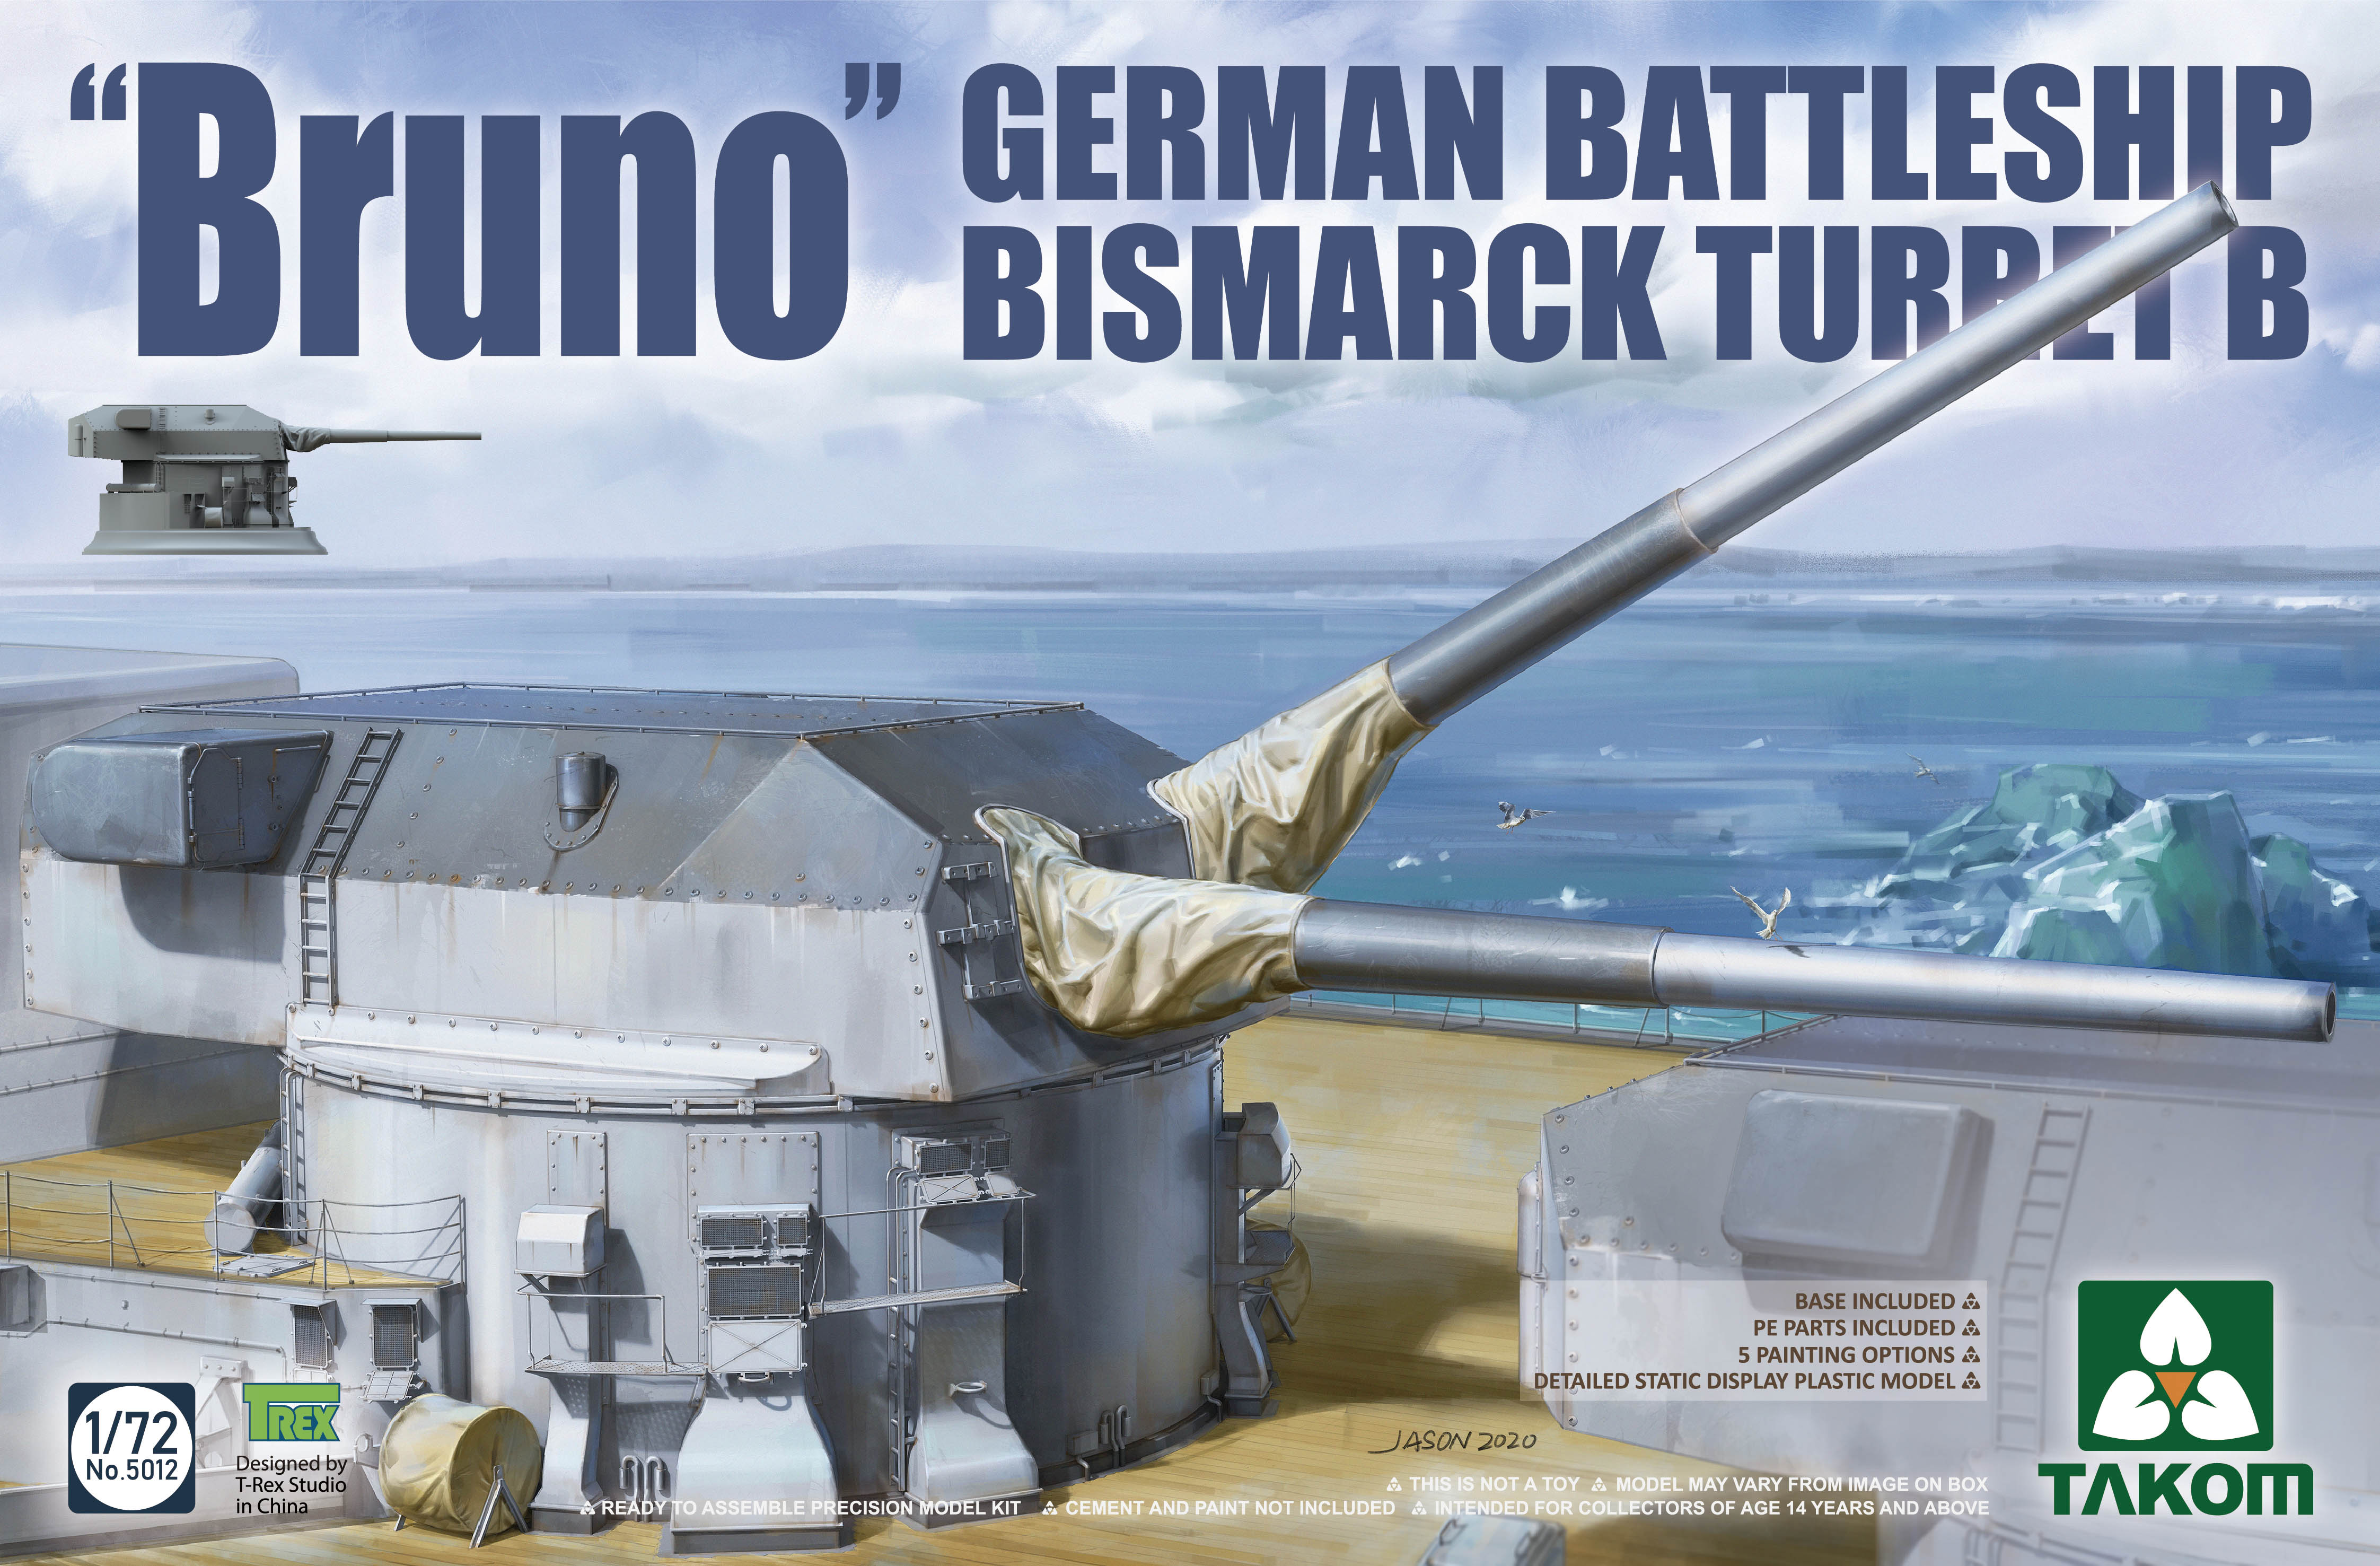 German Battleship Bismarck Gun Turret `Bruno`